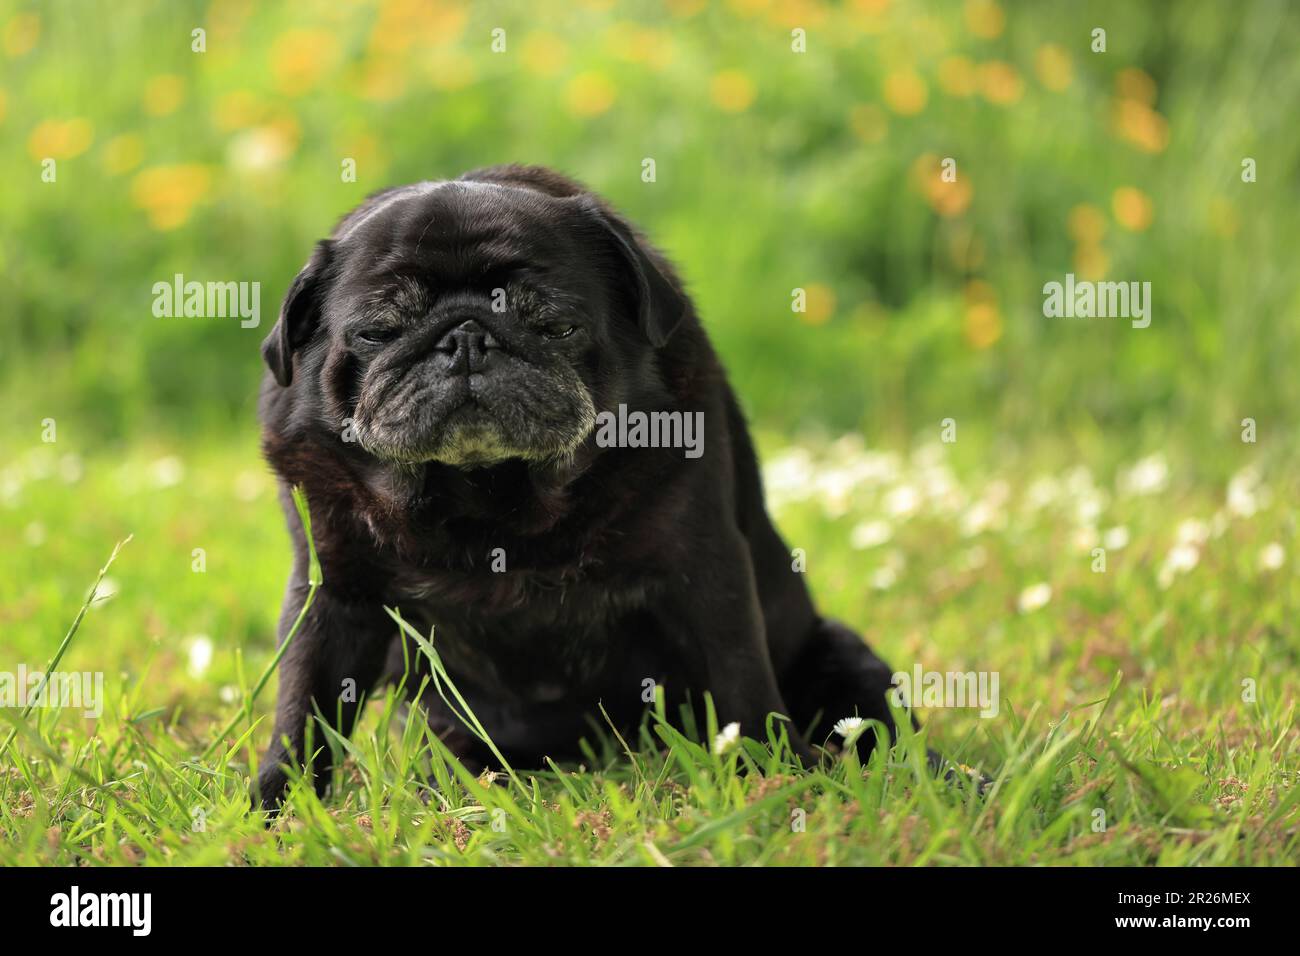 Retrato al aire libre de un viejo perro negro pug con una expresión facial divertida, cómica o gruñón sentado en un jardín con fondo bokeh y espacio de copia Foto de stock